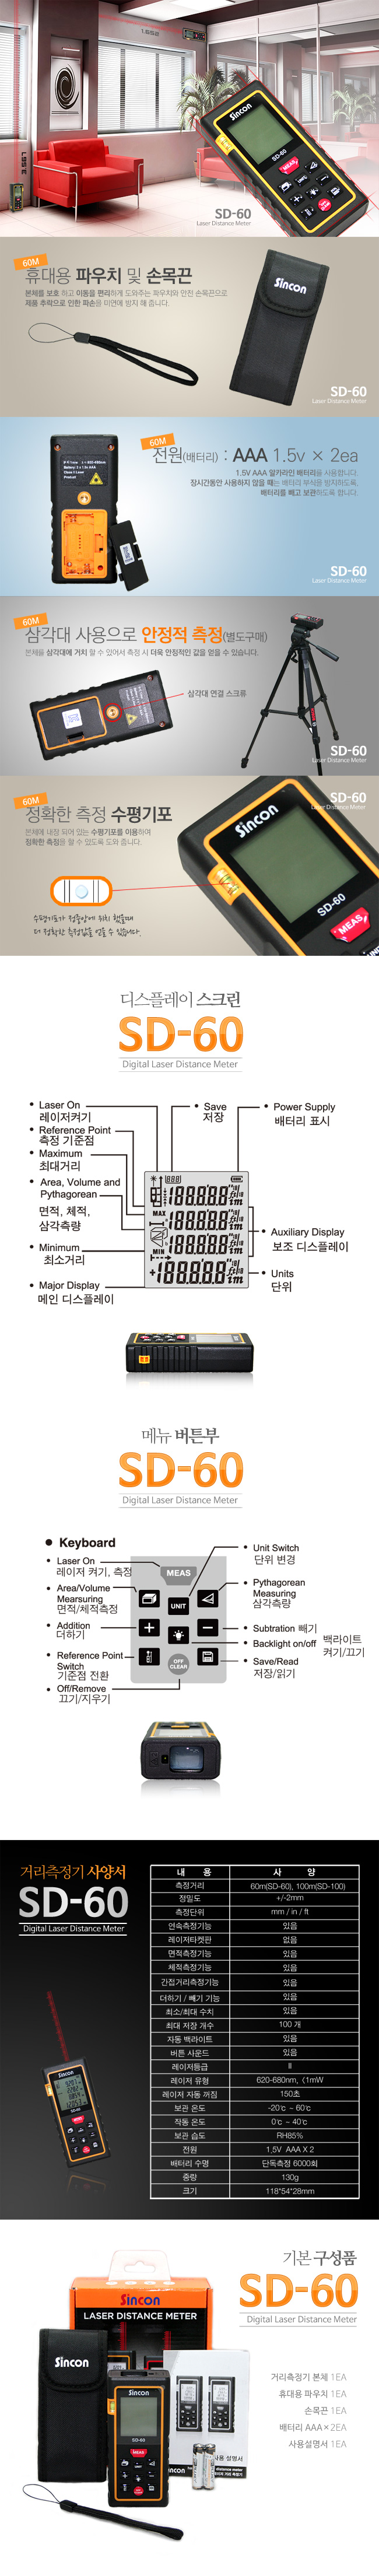 SD-60(2)